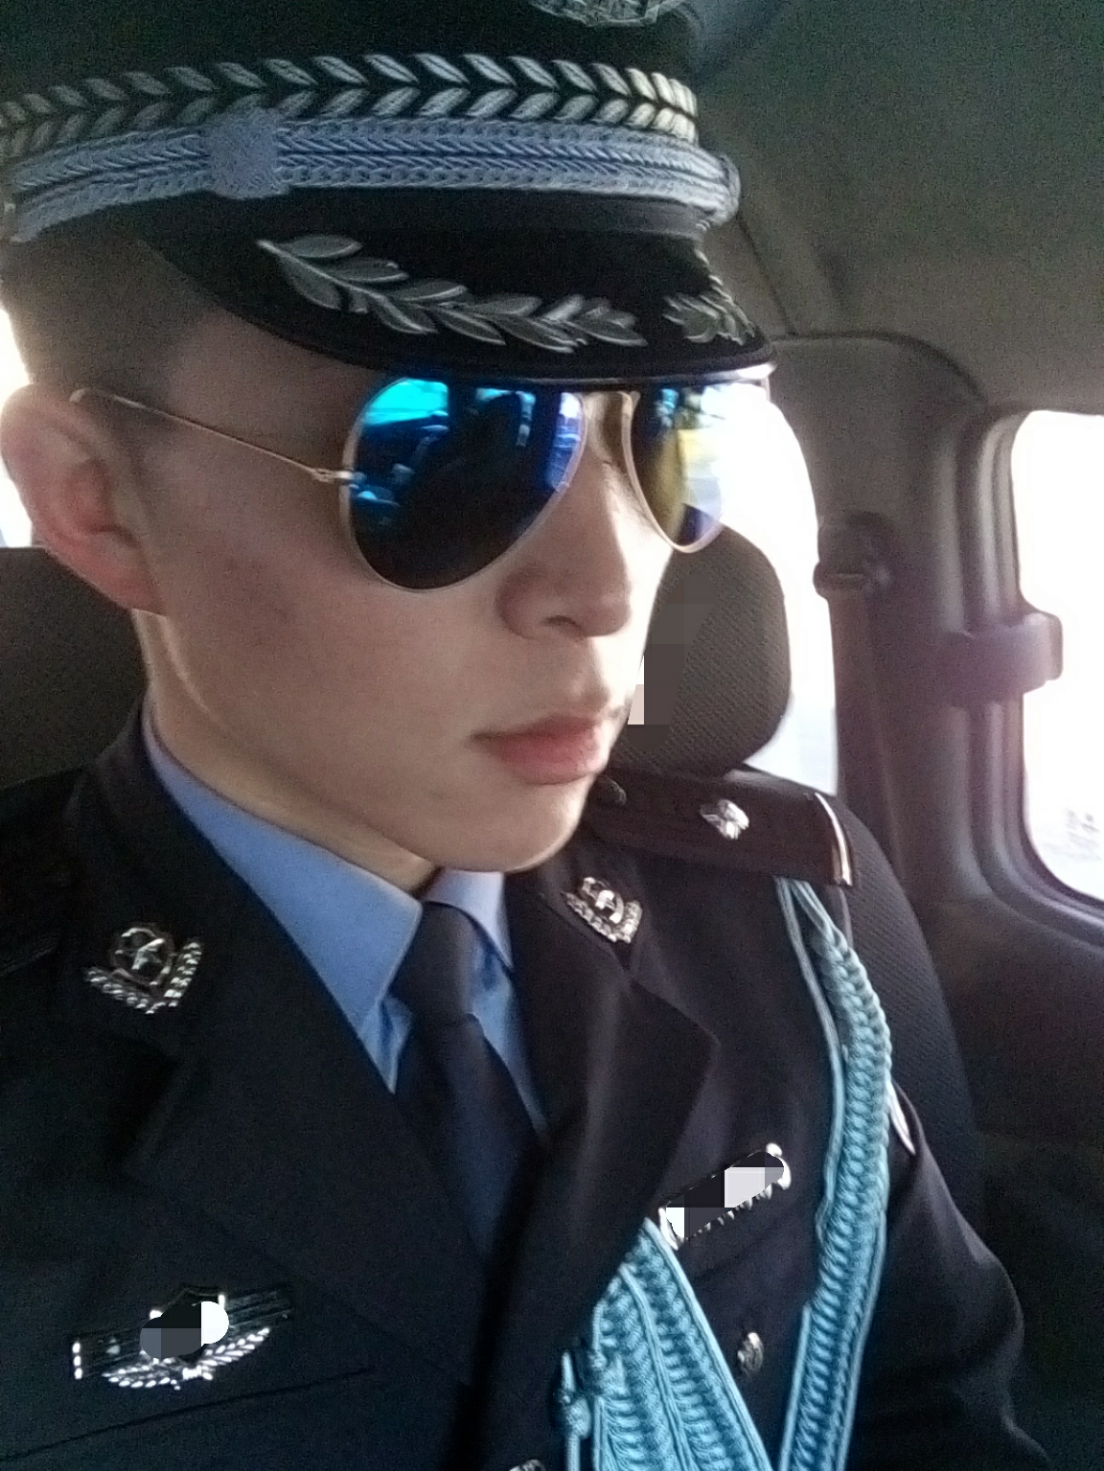 穿制服执行任务中被称赞很帅是什么体验?警察